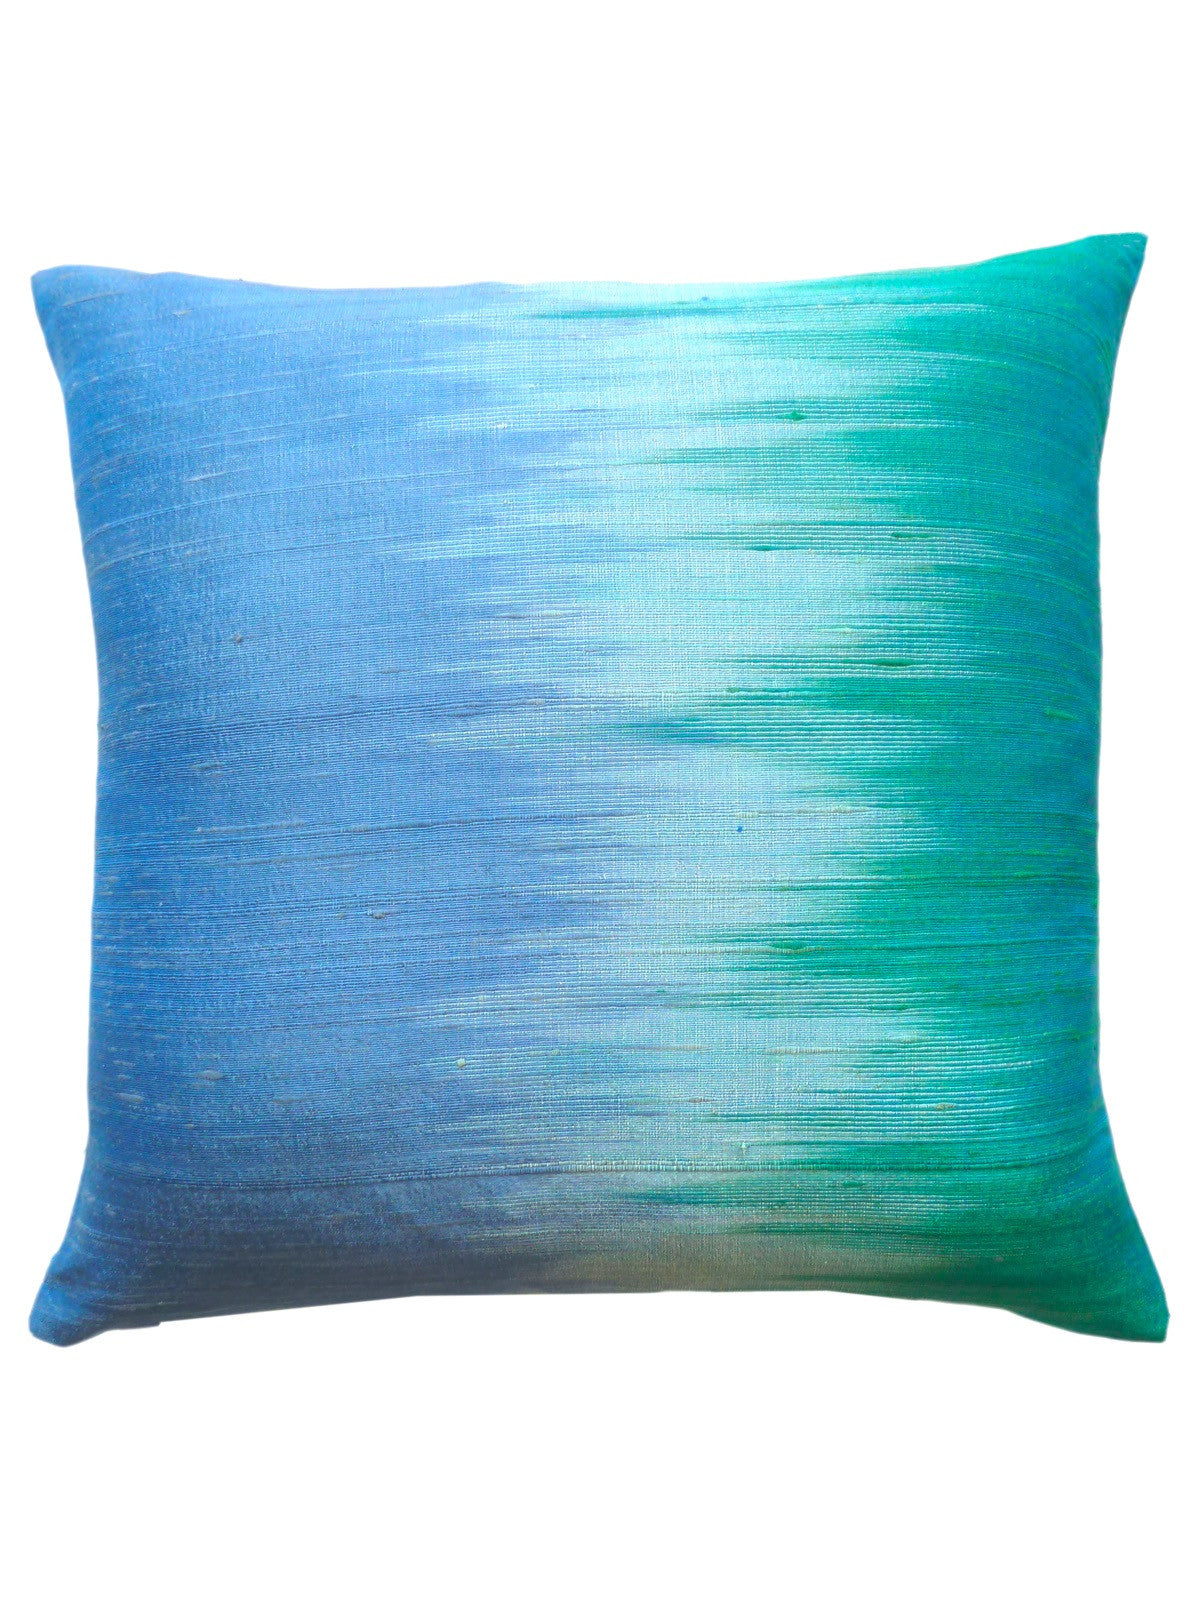 Cambodian Silk Ikat Pillow Blue Green Wave